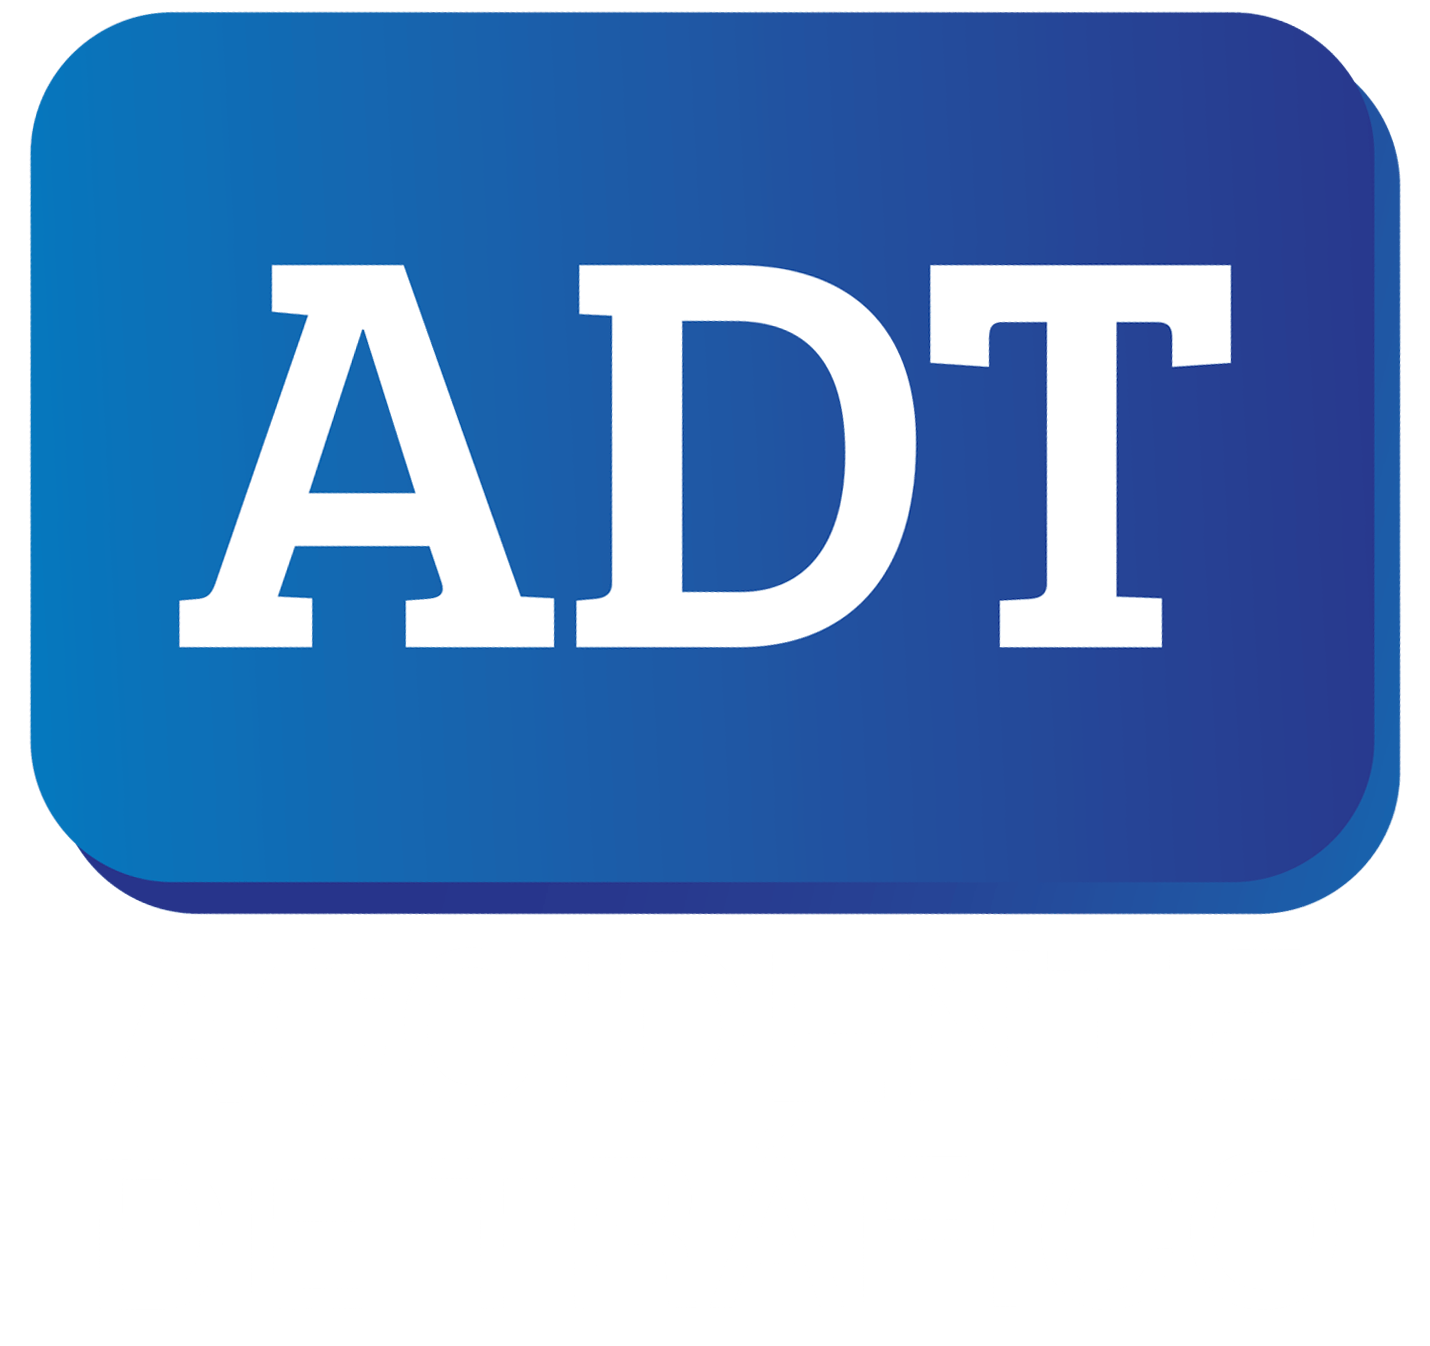 (c) Accidentedetrafico.com